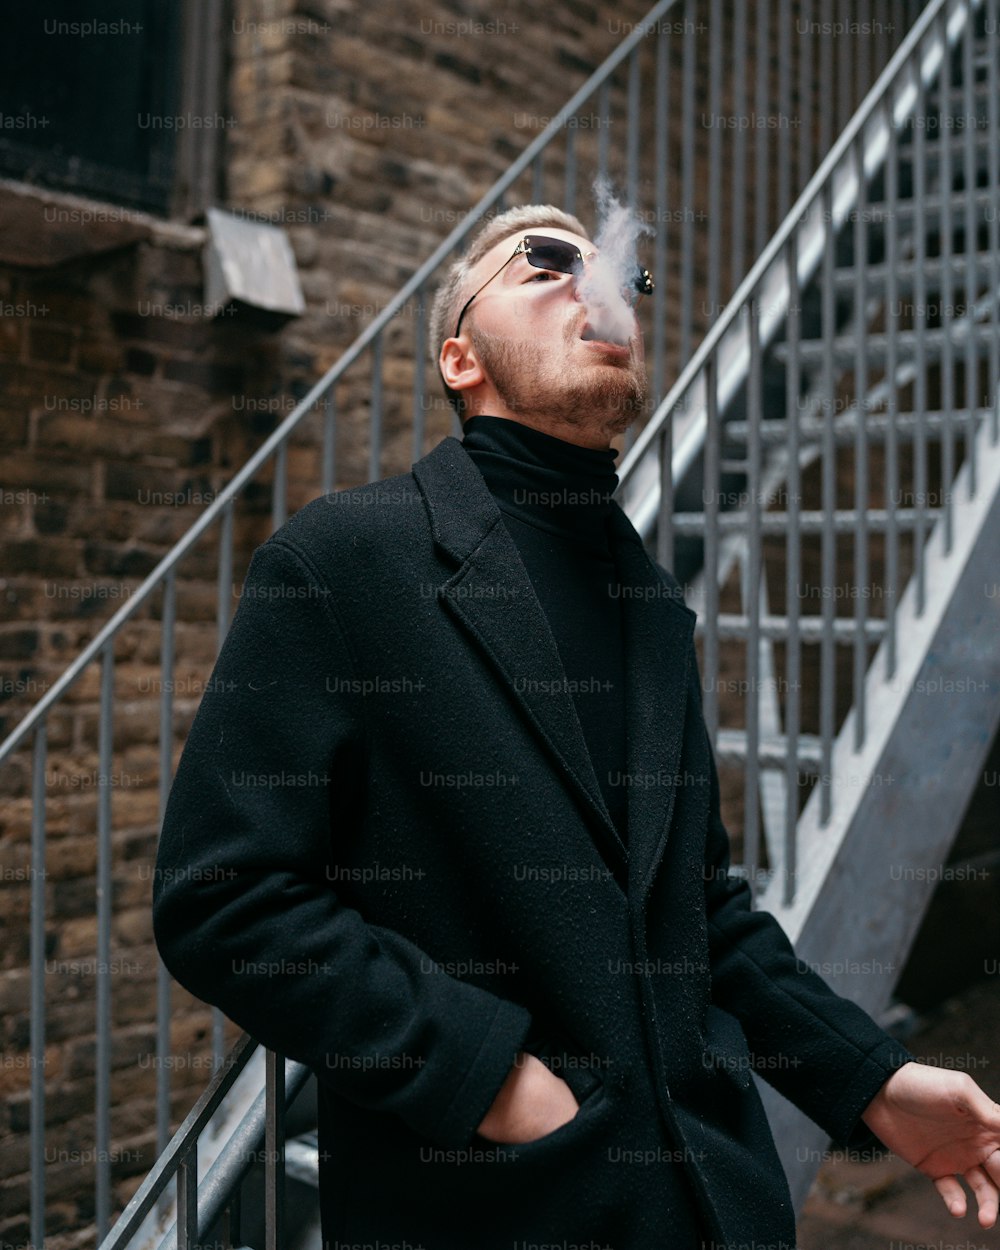 Un homme fumant une cigarette devant une cage d’escalier